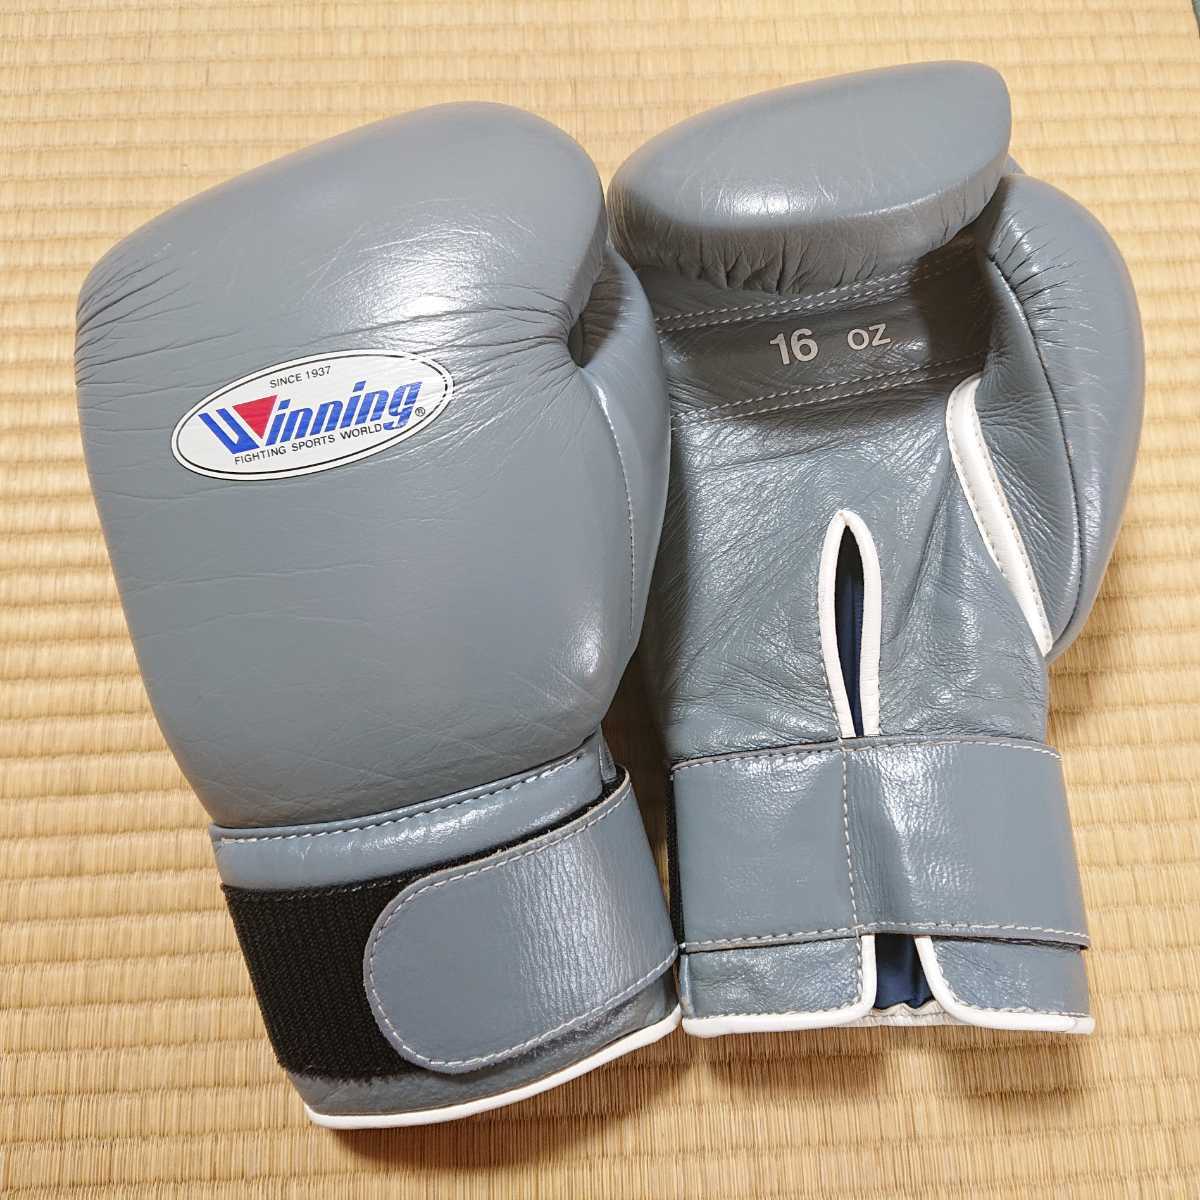 ■winning(ウイニング)製 ボクシンググローブ 16オンス 特注品 グレー